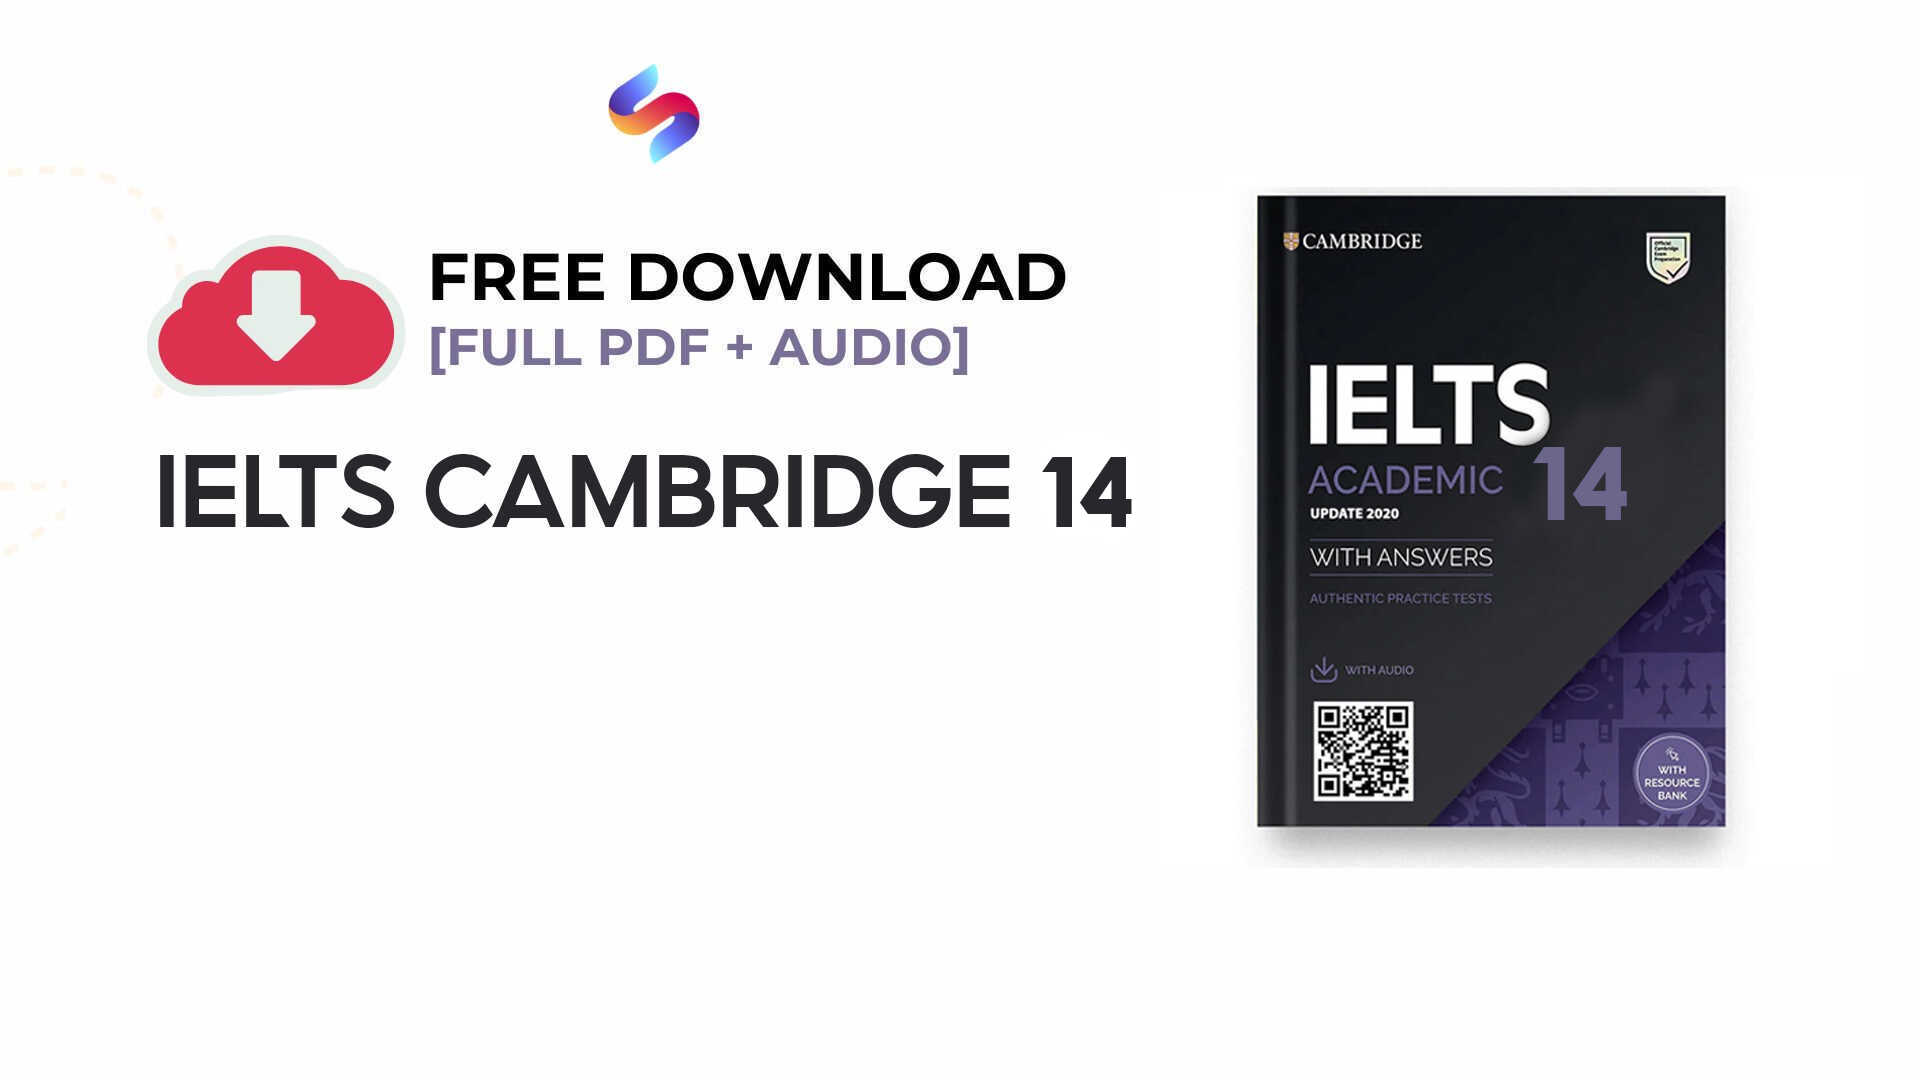 Tải miễn phí sách CAMBRIDGE IELTS 14 pdf + audio (kèm đáp án)